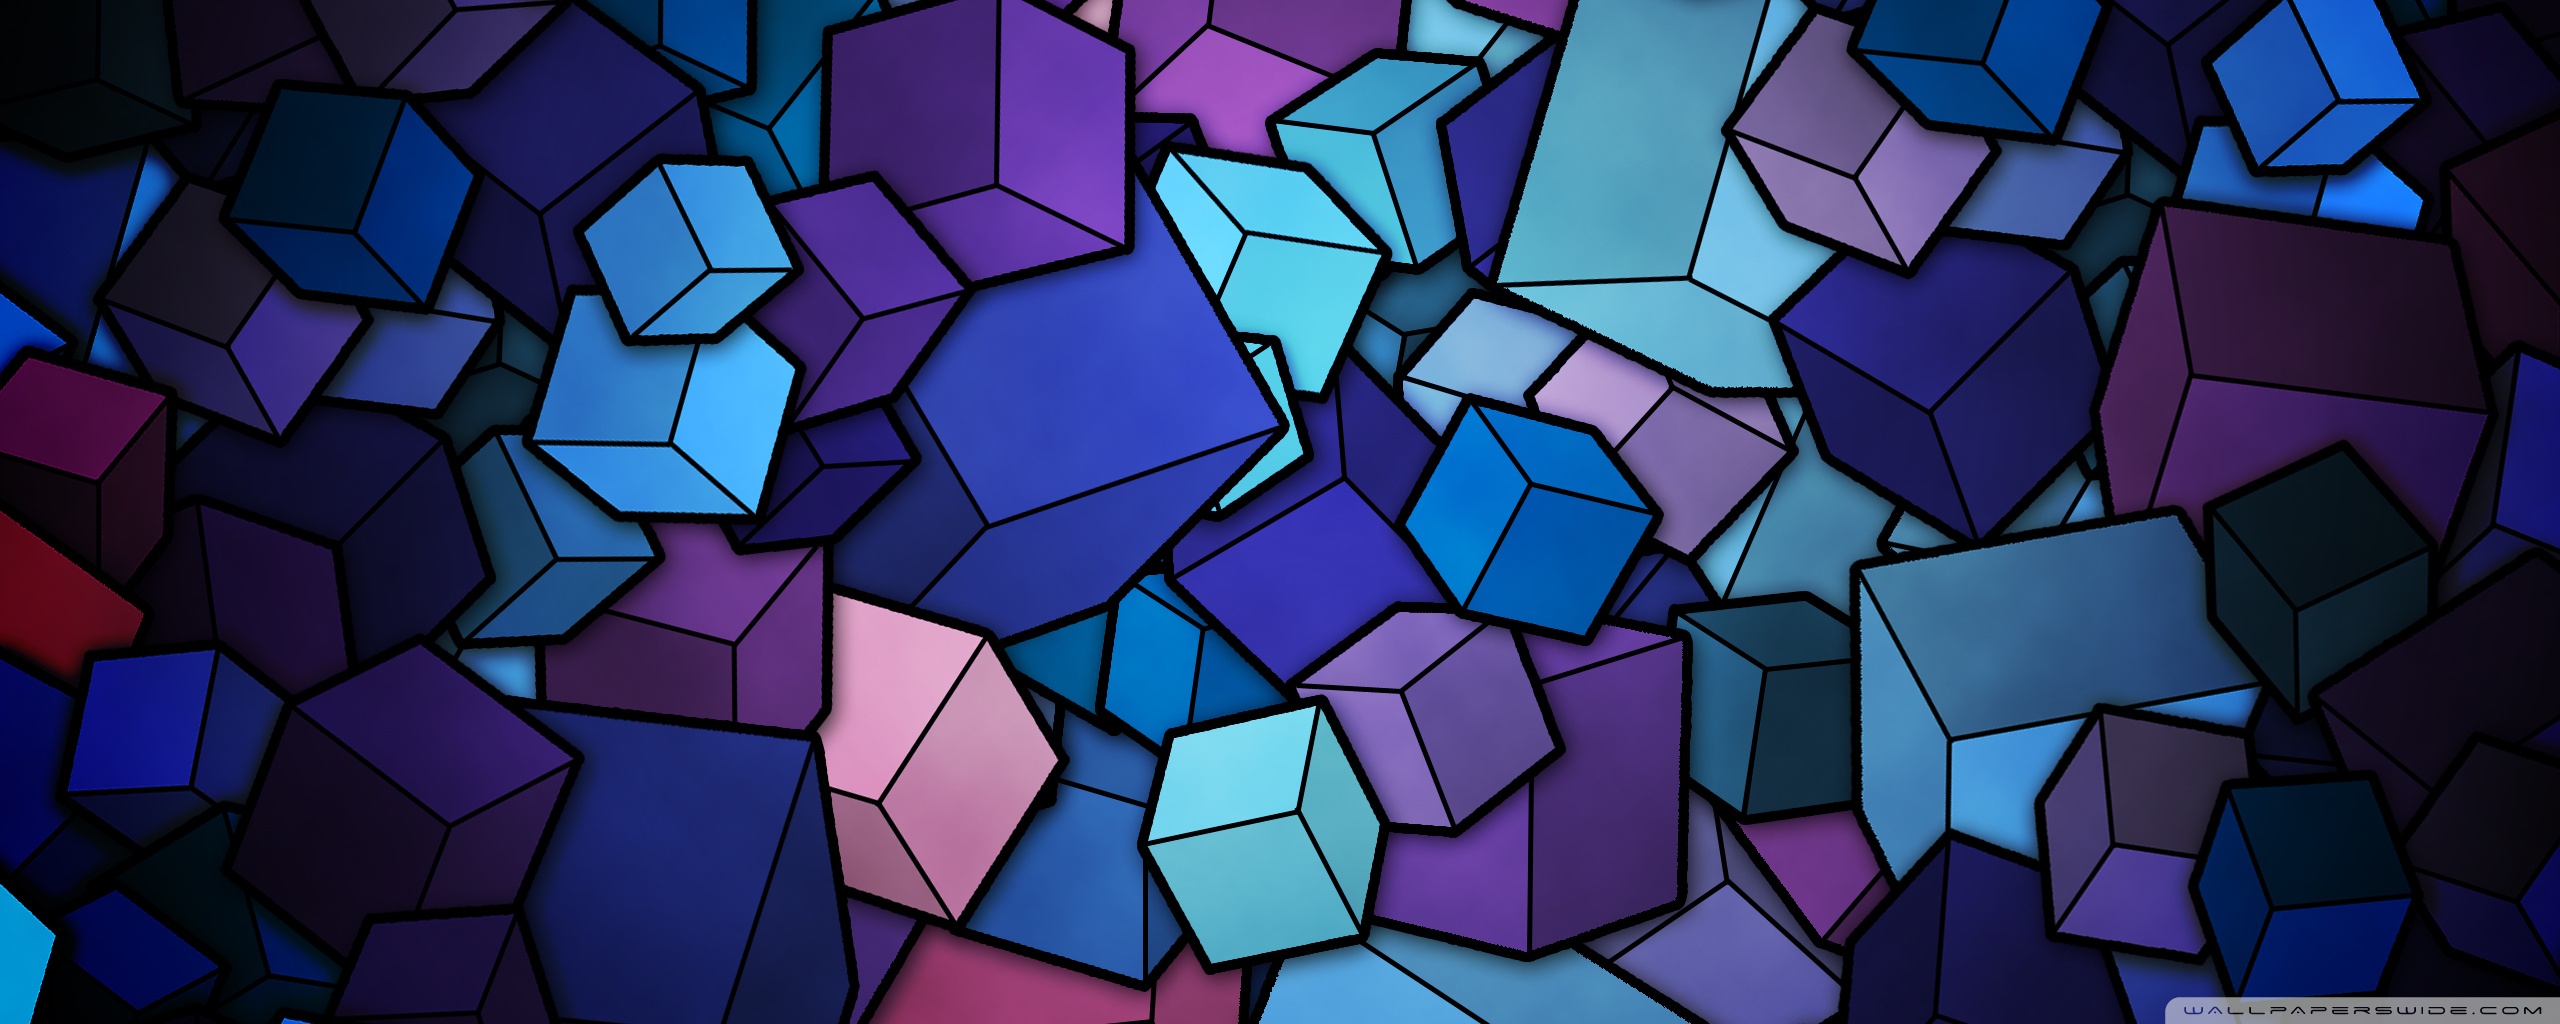 Blue Cubes Wallpaper